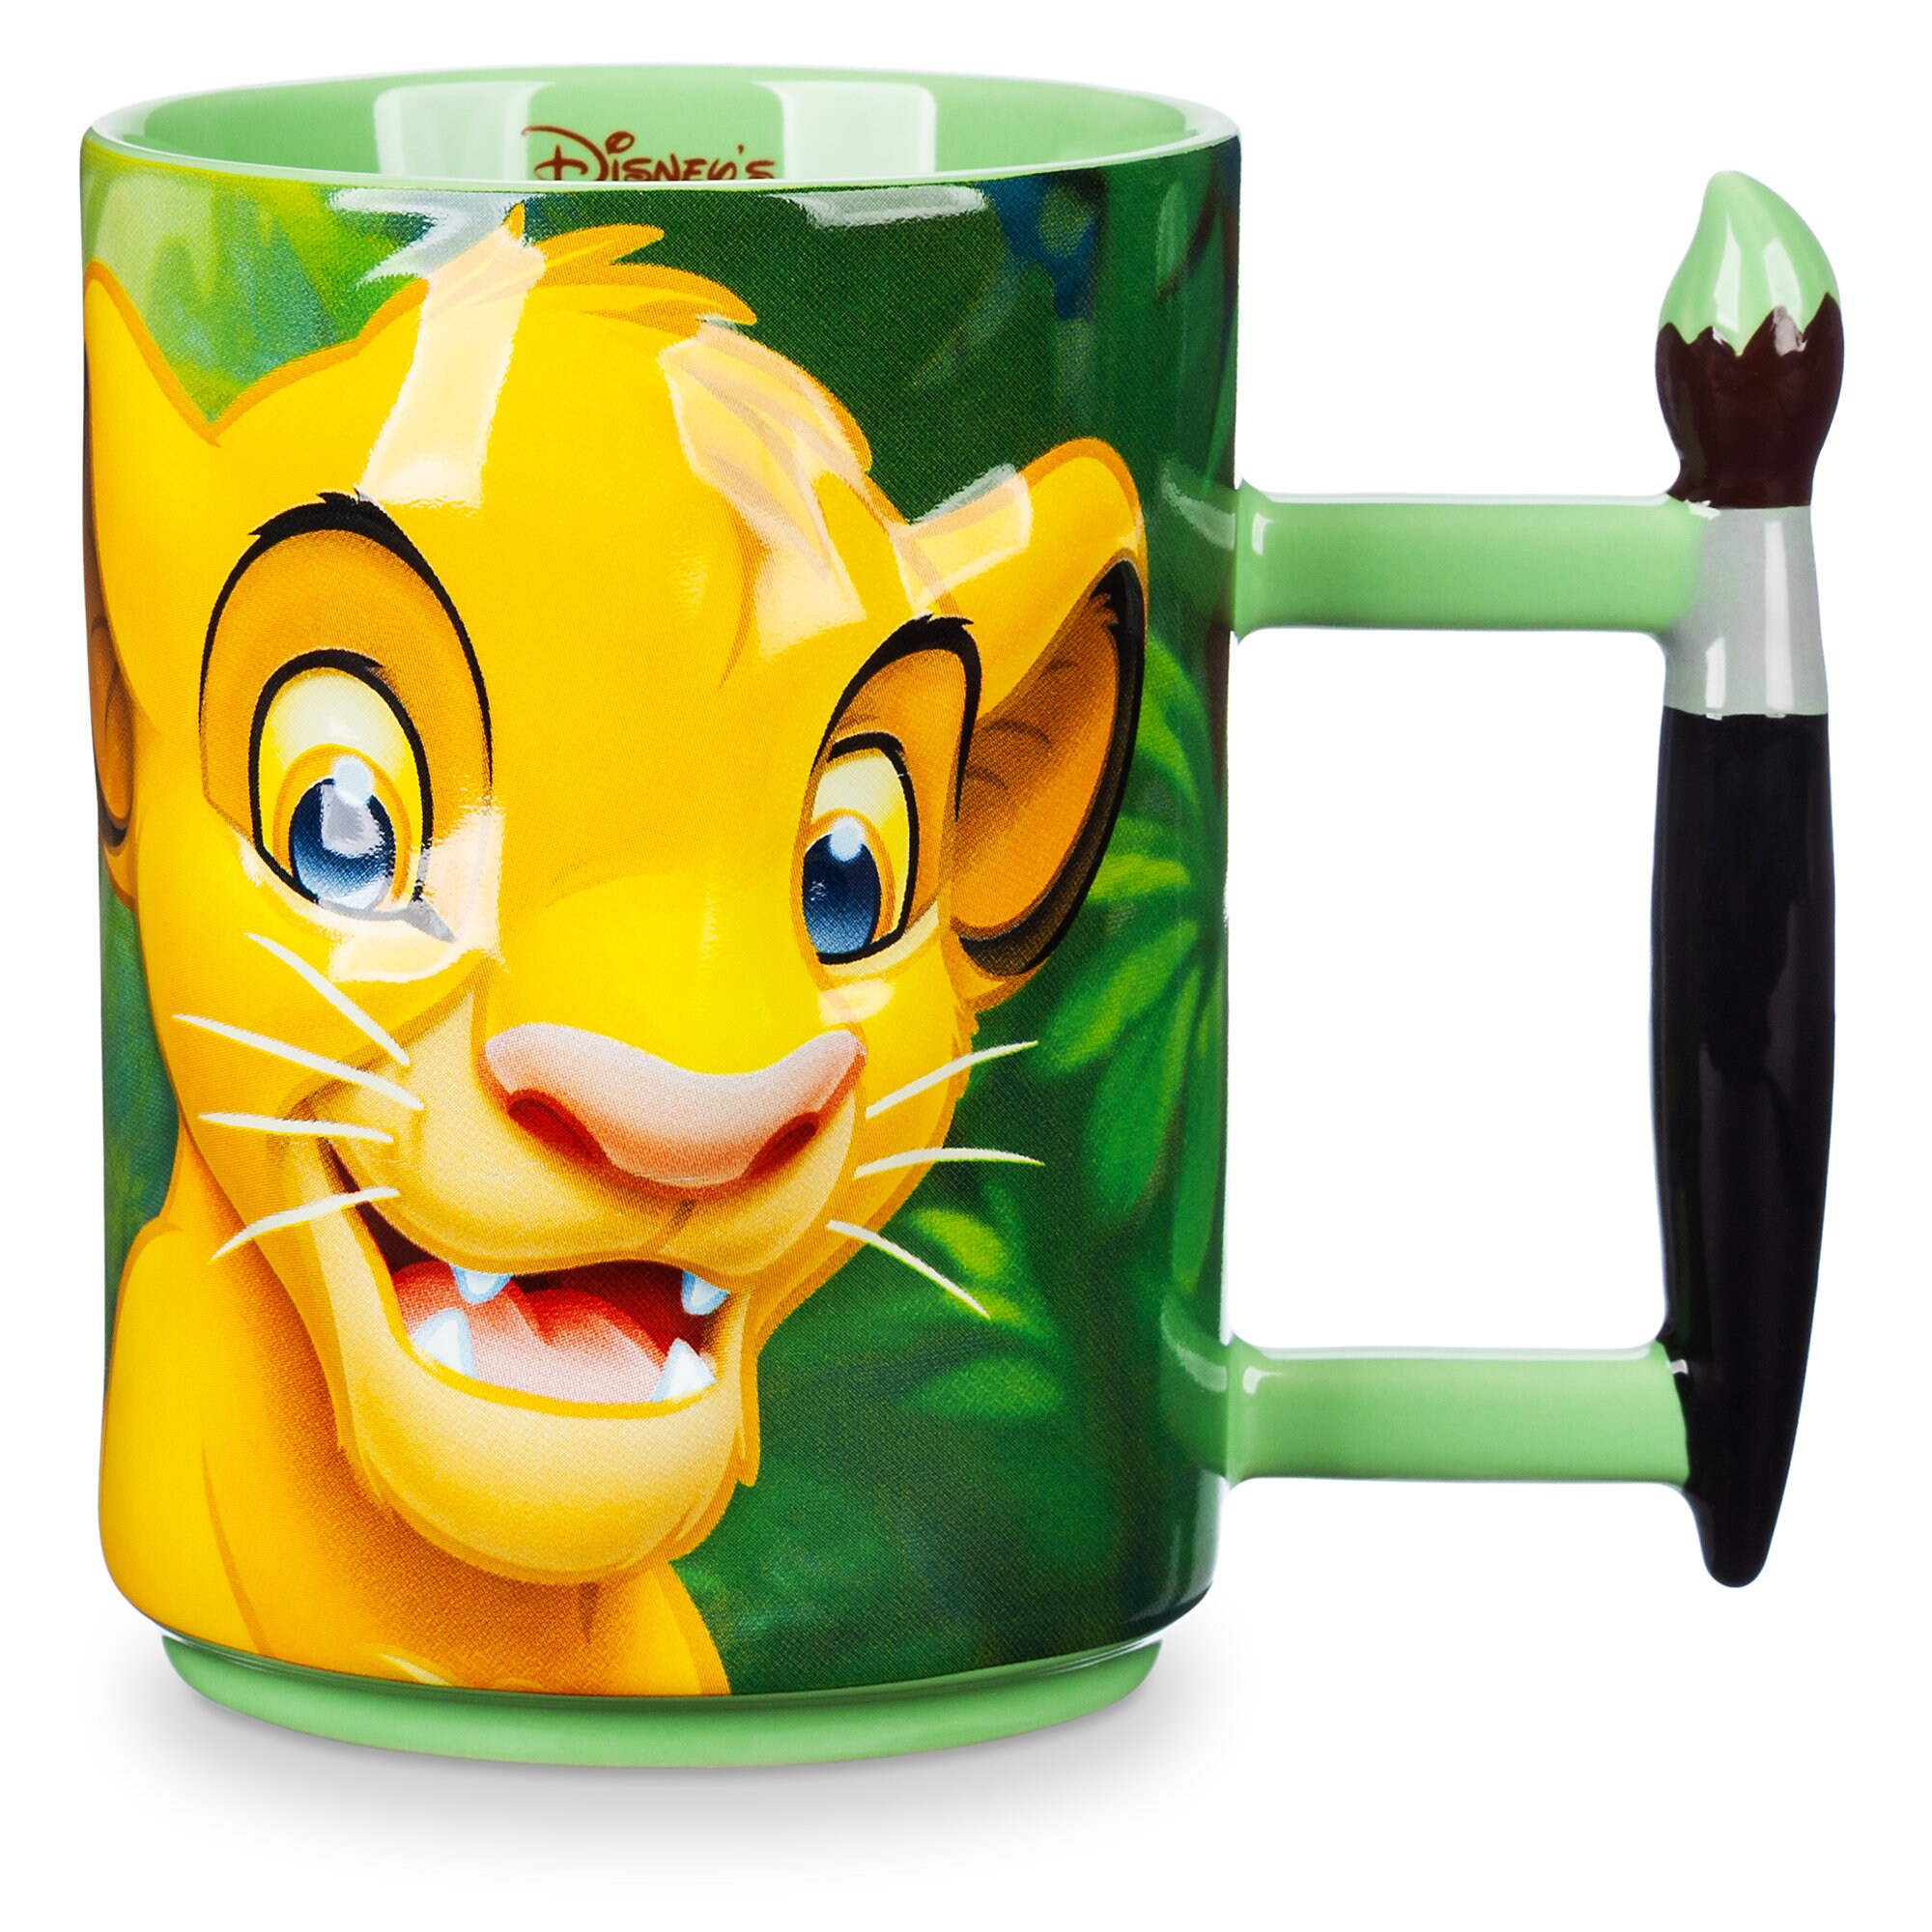 The Lion King Animated Classics Mug